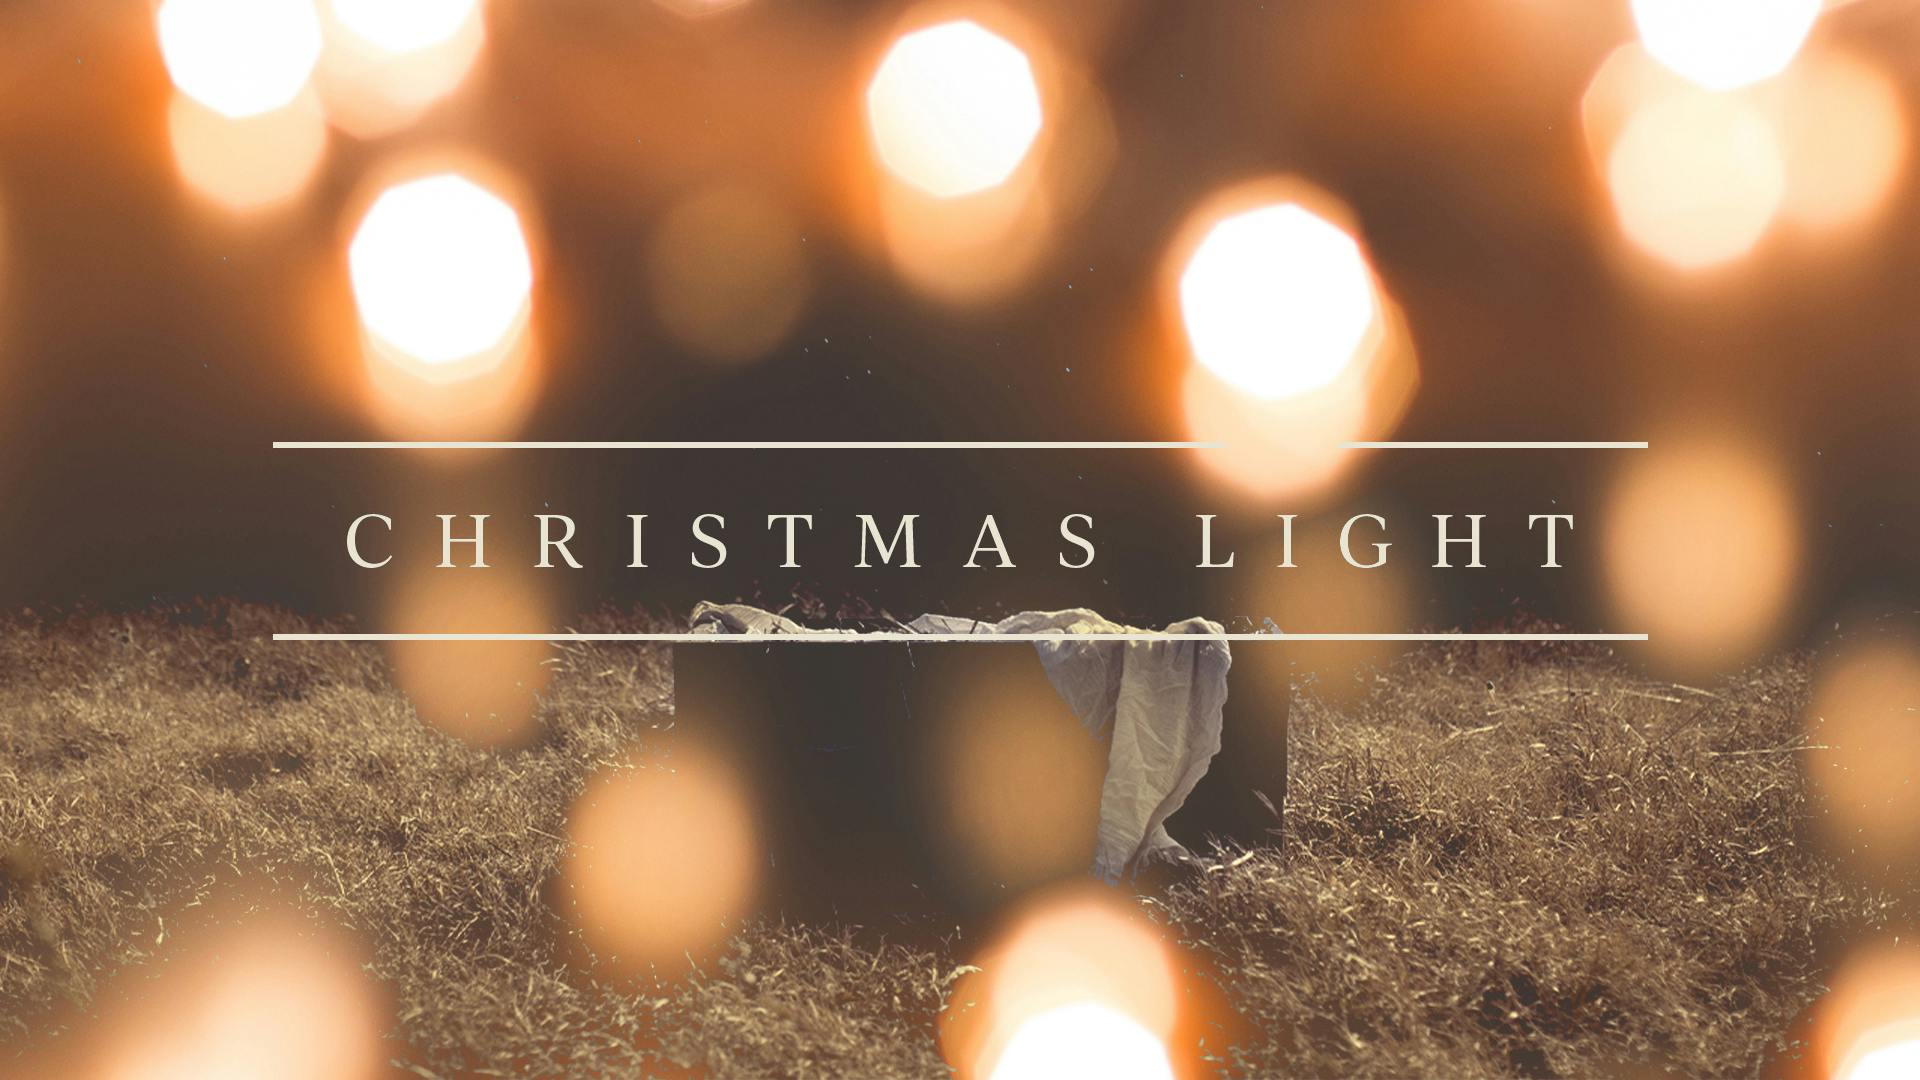 Christmas Light: Hope cover for post